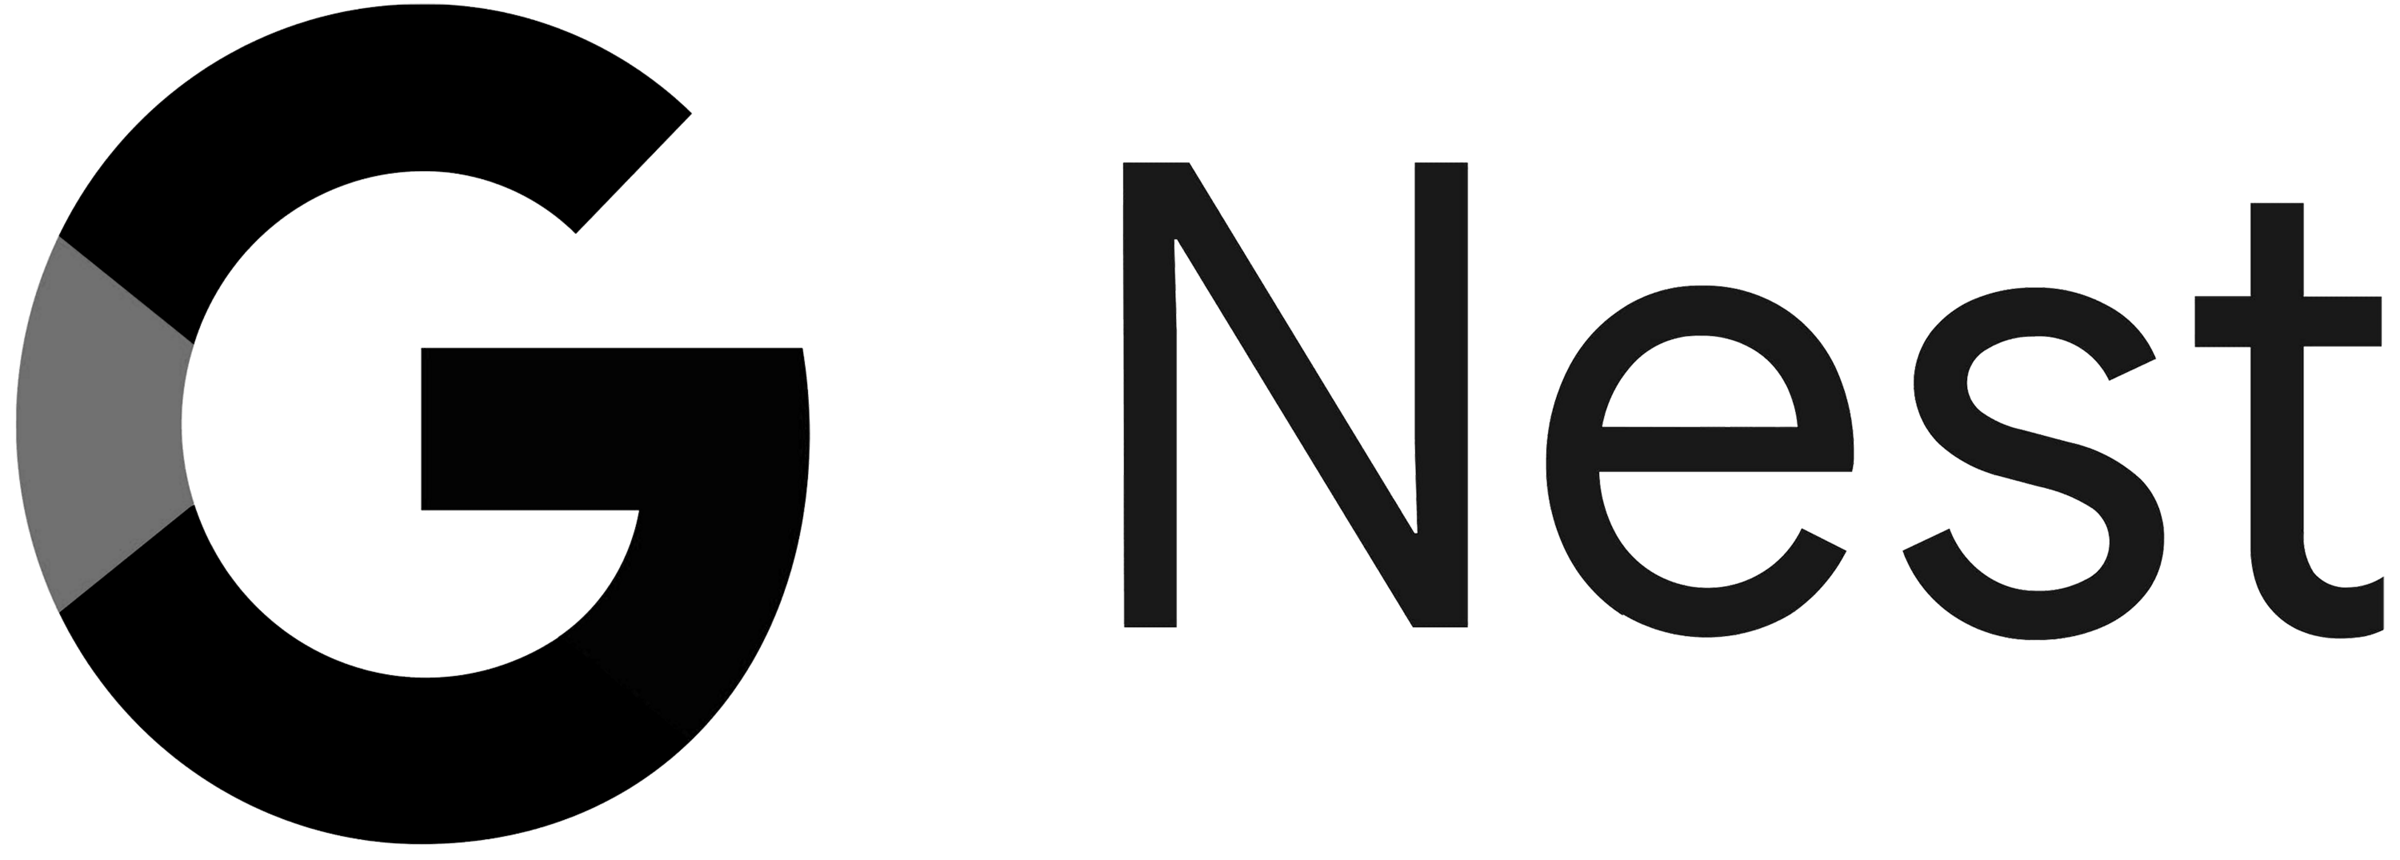 Google Nest logo